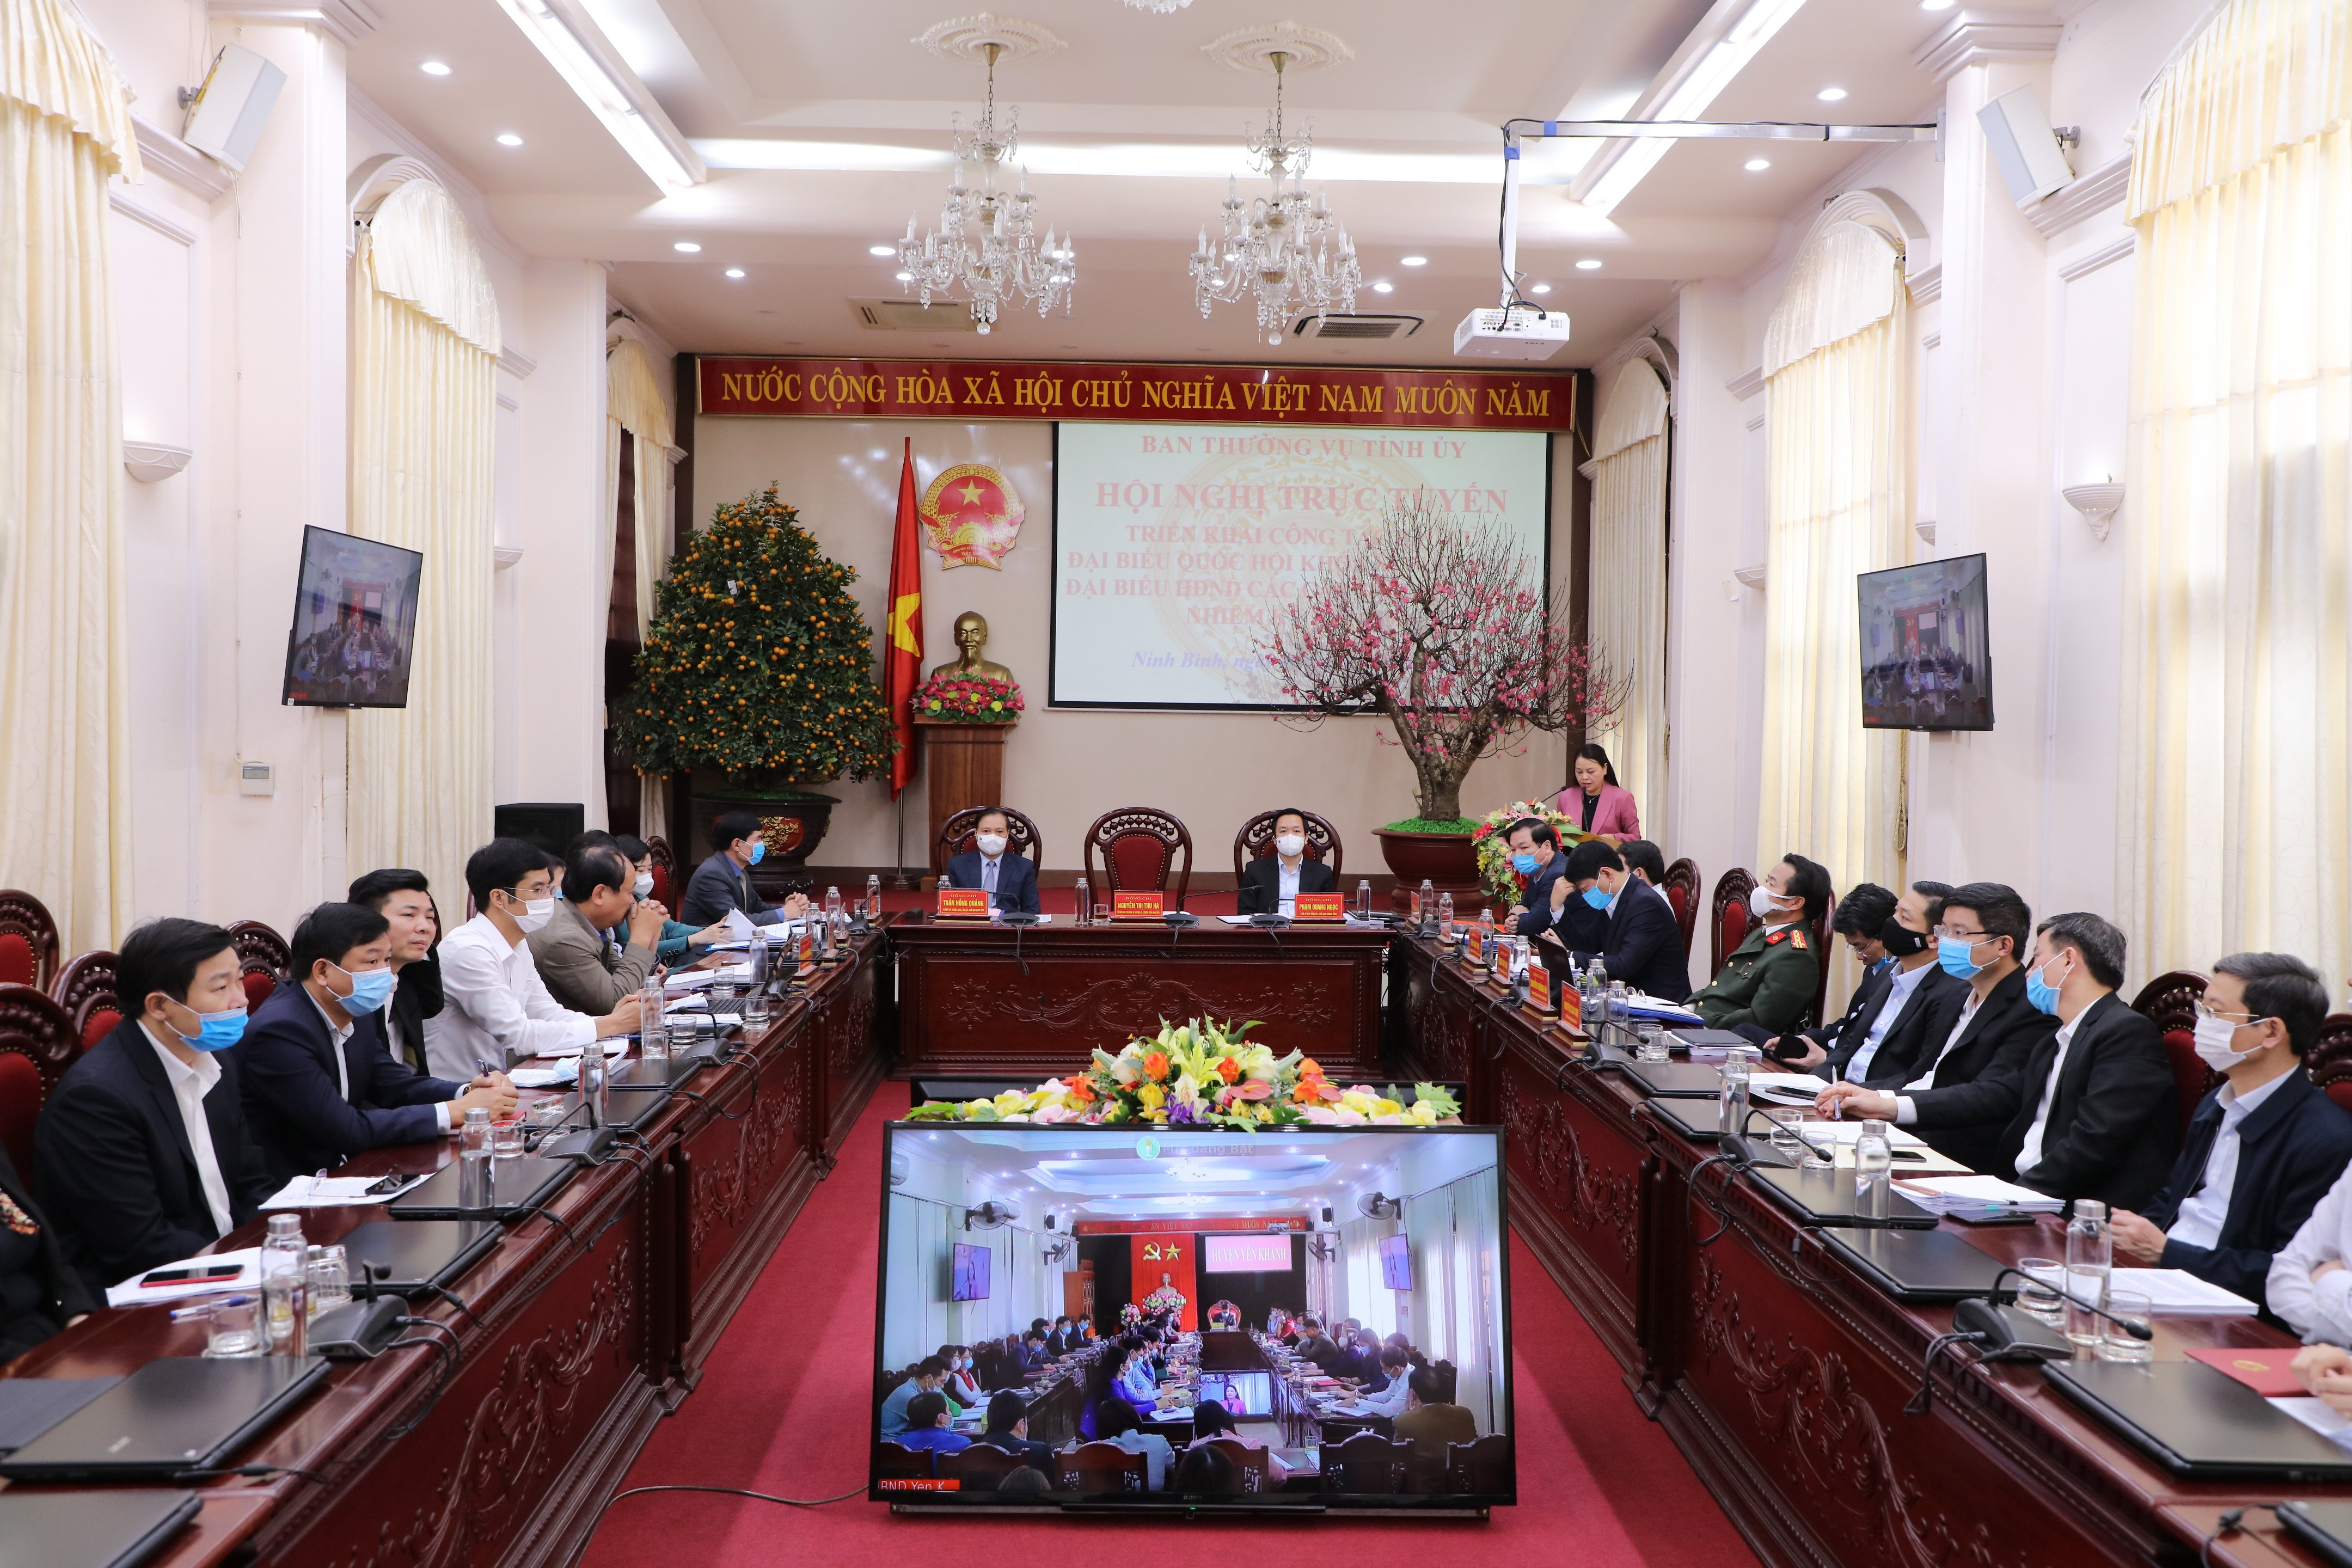 Hội nghị trực tuyến toàn tỉnh triển khai công tác bầu cử ĐBQH khóa XV và bầu cử đại biểu HĐND các cấp tỉnh Ninh Bình, nhiệm kỳ 2021 - 2026